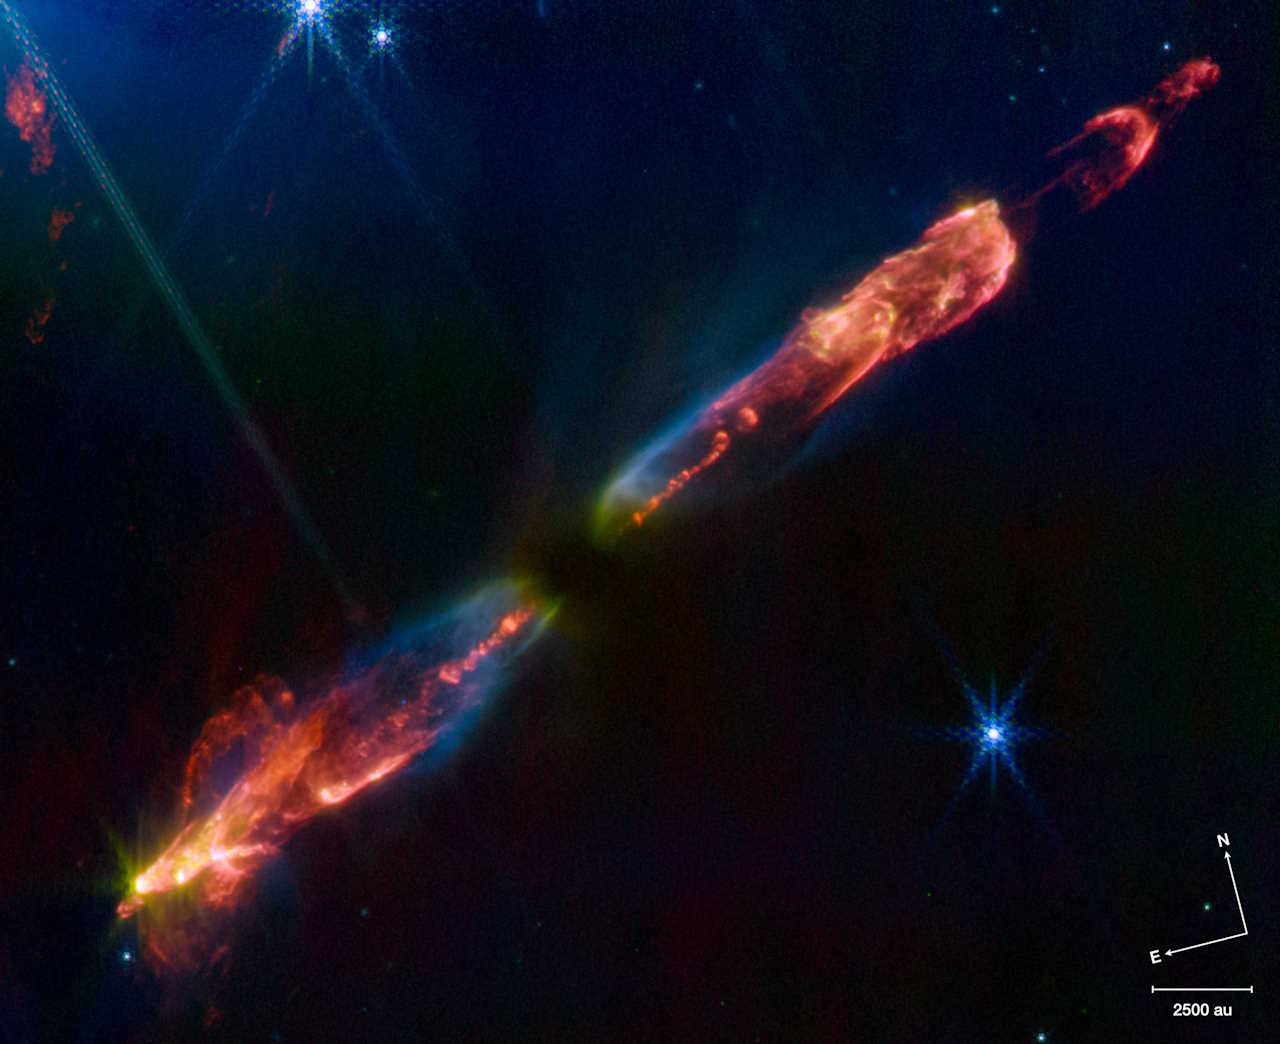 Це одне з найпередовіших зображень, коли-небудь зроблених про народження зірки. Знімок, захоплений космічним телескопом Джеймса Вебба (JWST), показує струмені гарячої речовини, що витікають з Herbig-Haro 211-mm, однієї з наймолодших відомих зірок. &quot;Коли зірка з'являється, вона випромінює надзвукові промені речовини, які можуть простягатися на кілька світлових років&quot;, - каже Том Рей, астроном з Дублінського інституту перспективних досліджень. Типові струмені містять речовину в атомній формі, або нейтральні атоми, або іони. &quot;Наймолодші зірки, схоже, випромінюють промені майже чистих молекул, всупереч тому, що астрономи думали раніше, і рухаються дуже повільно&quot;, - каже Рей. Сама зірка перебуває в темному проміжку поблизу центру зображення, прихована пилом.